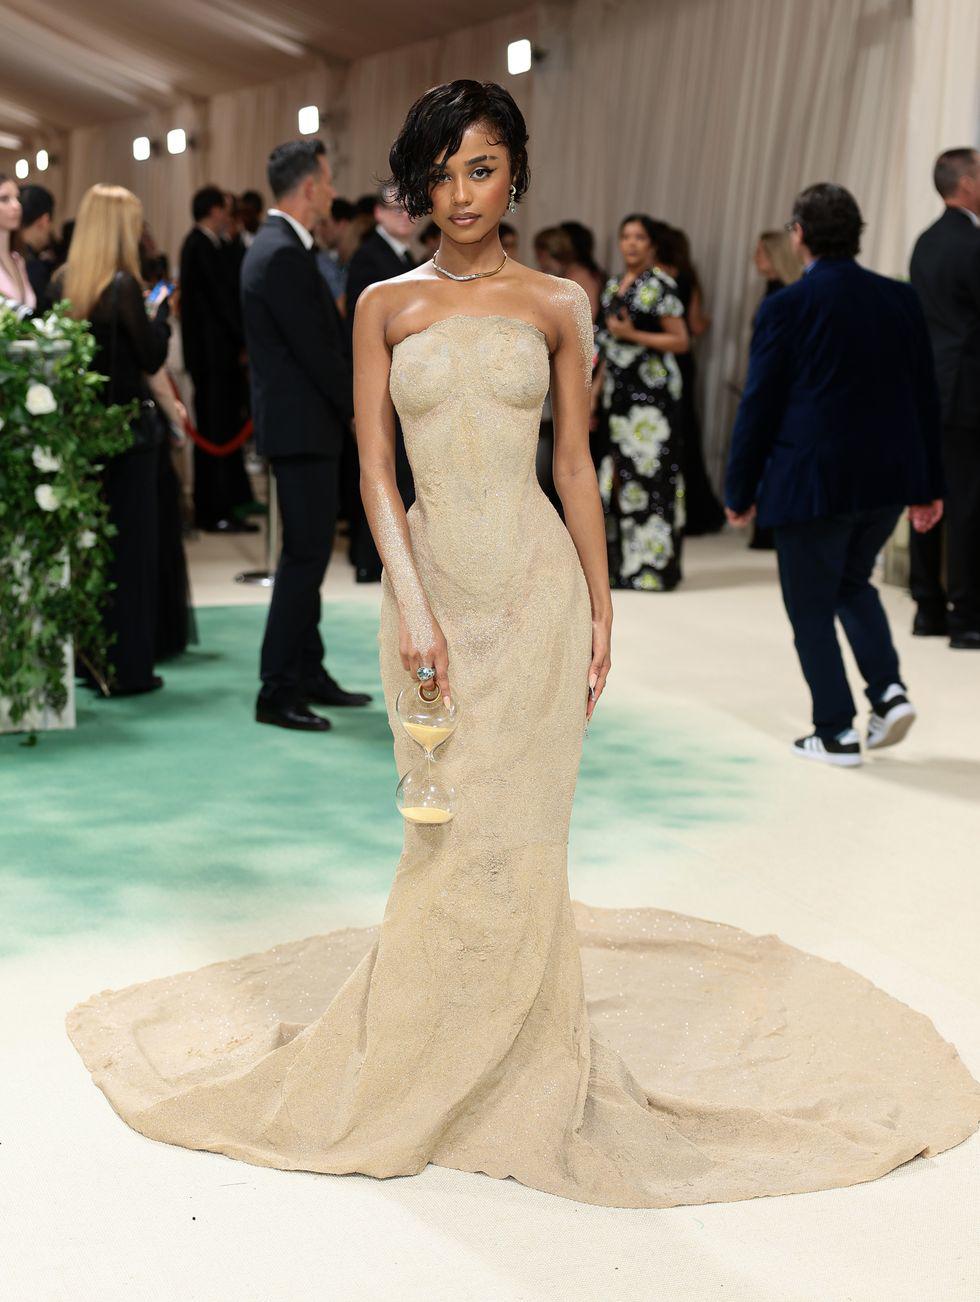 Độc đáo bộ váy làm từ cát, "có một không hai" tại đại tiệc thời trang lớn nhất thế giới - 1